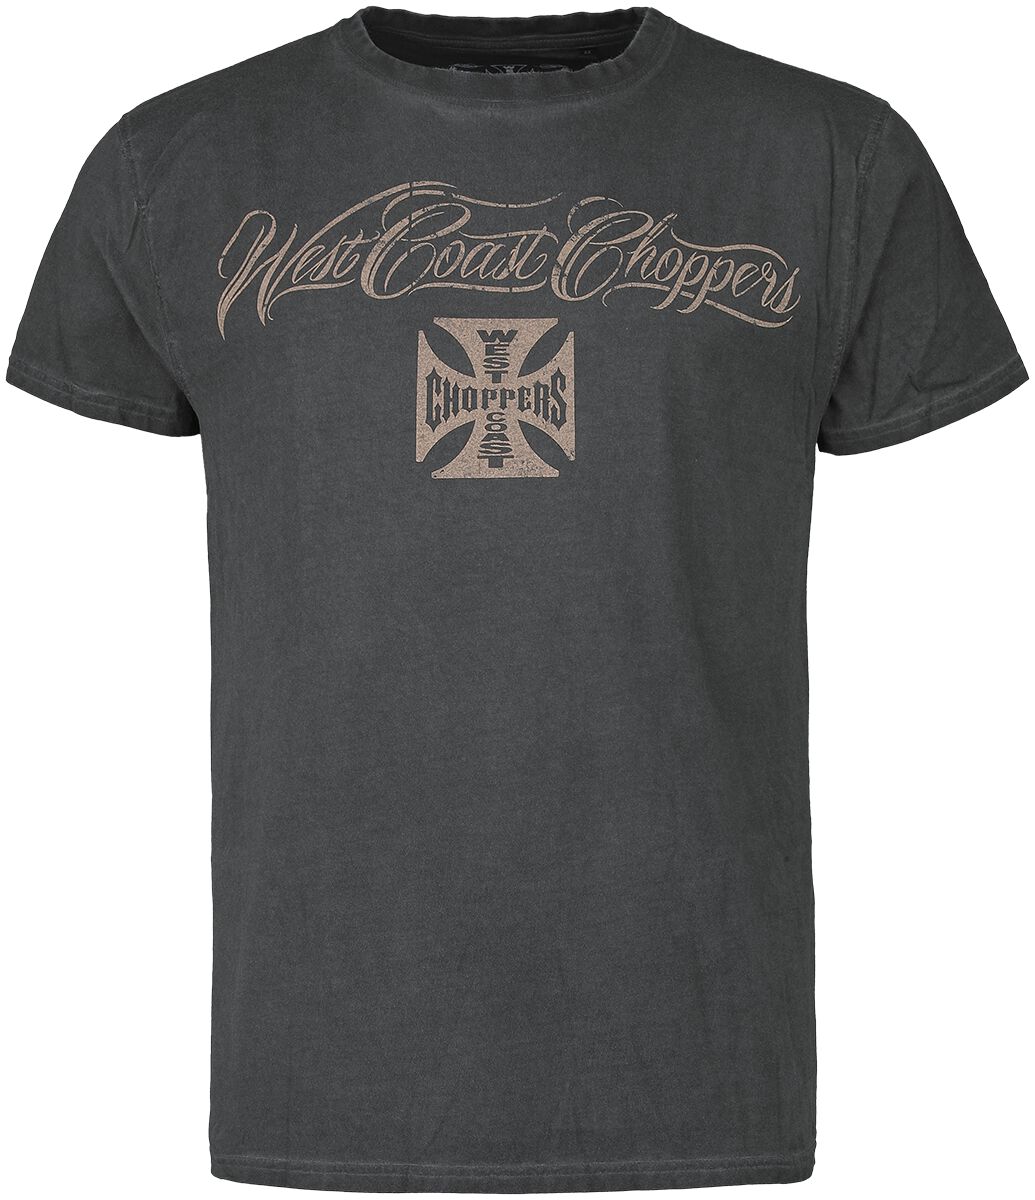 West Coast Choppers T-Shirt - Eagle Crest - S bis 4XL - für Männer - Größe S - anthrazit